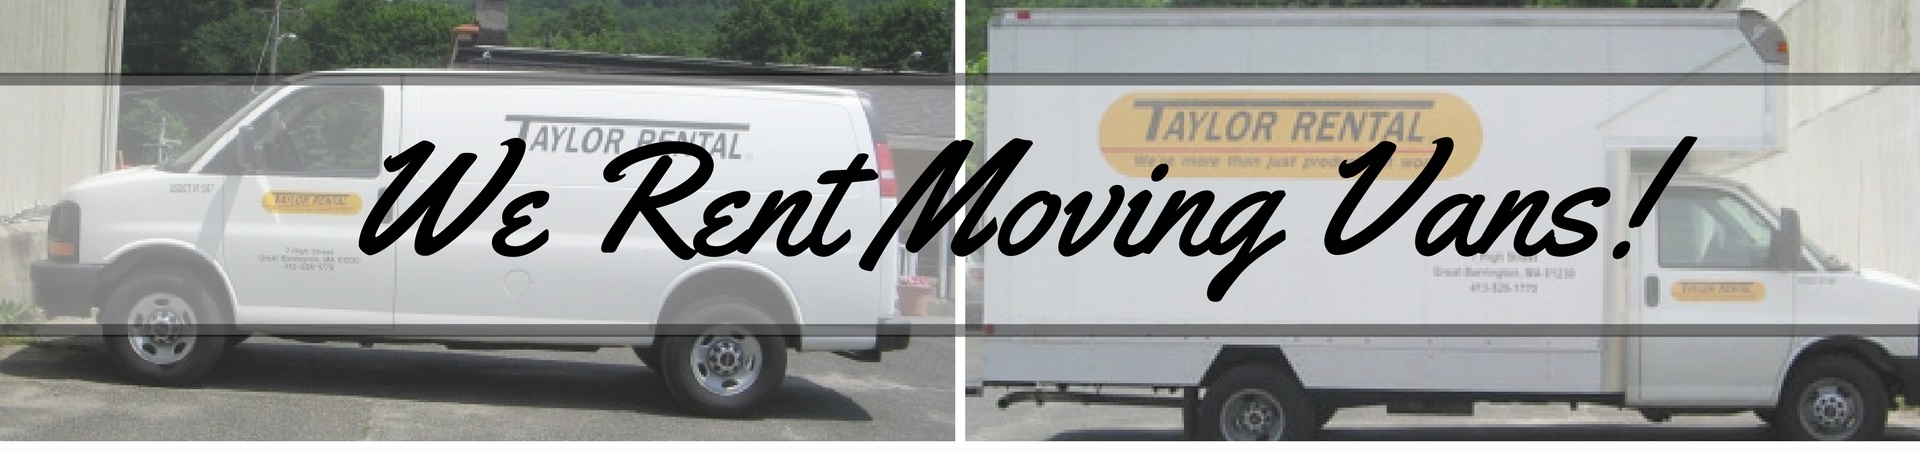 we rent moving vans